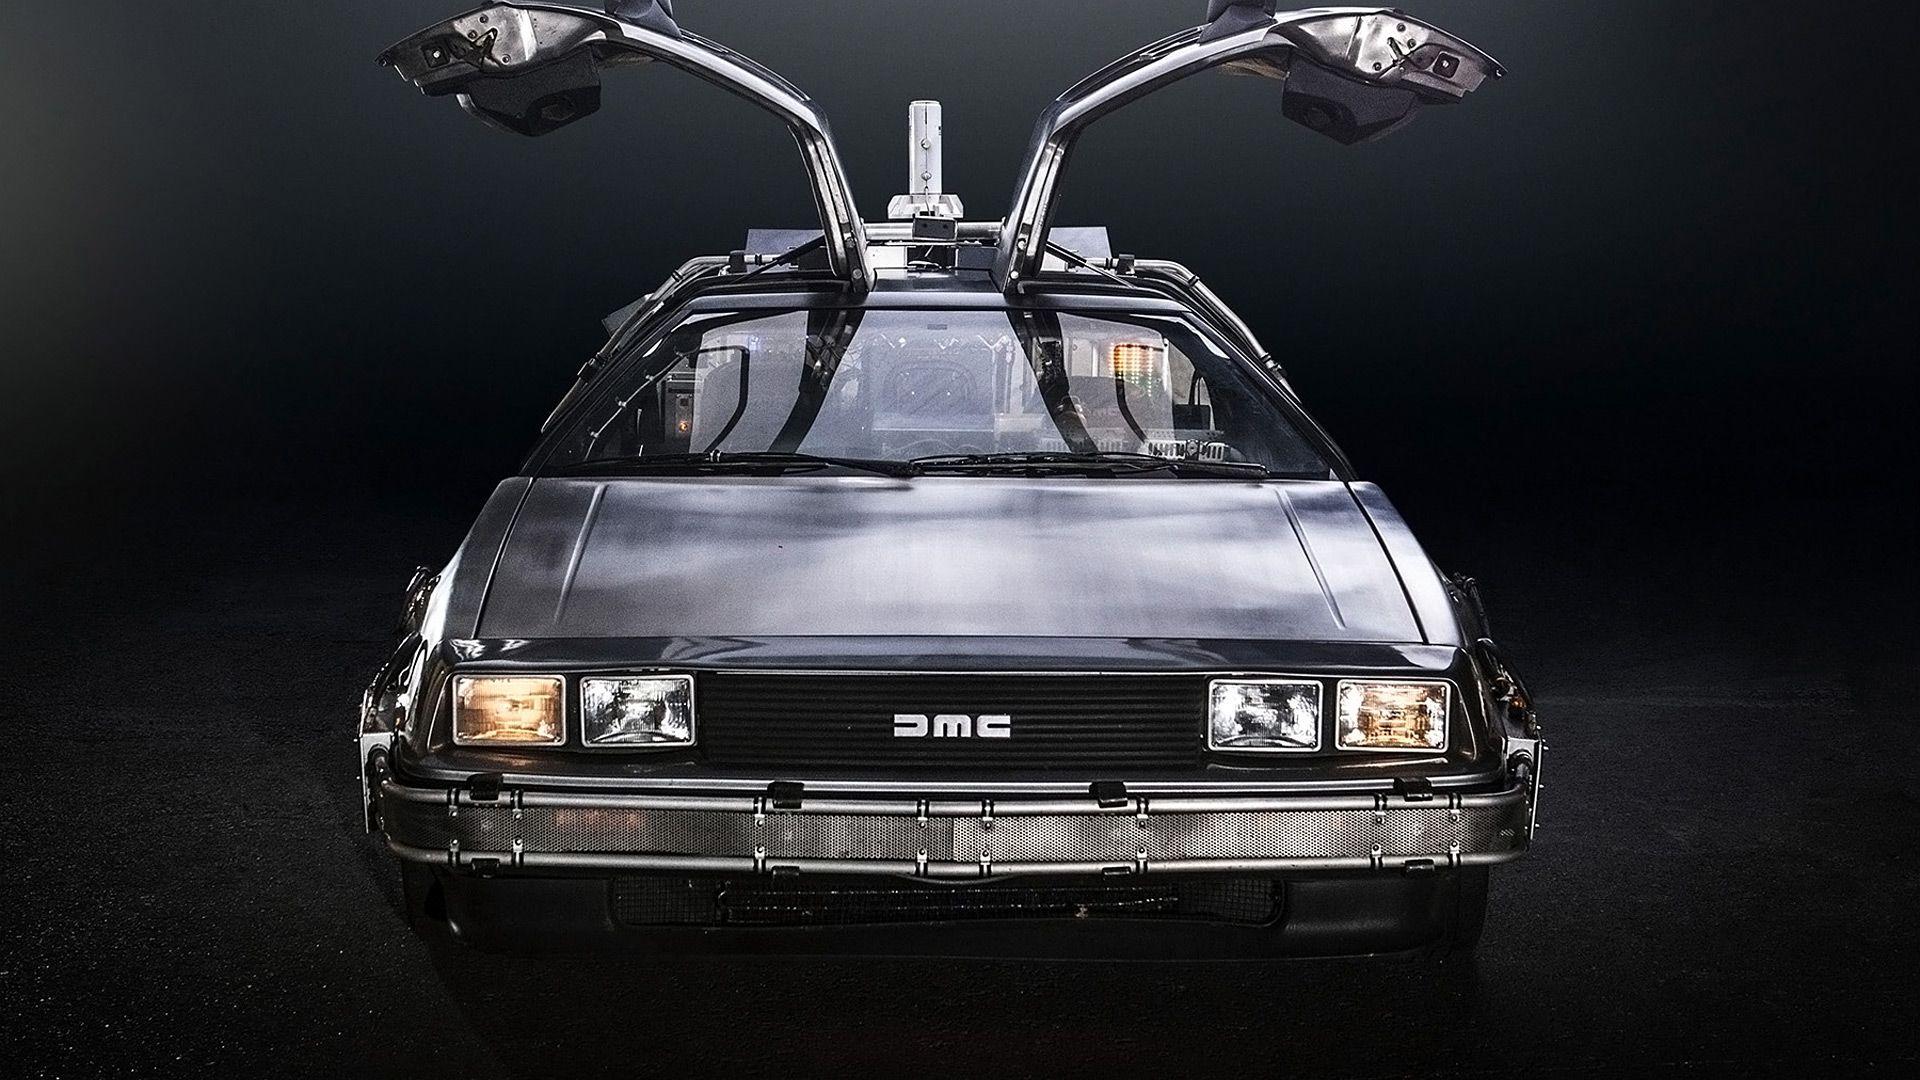 DeLorean DMC 12 'Back To The Future' Wallpaper & HD Image